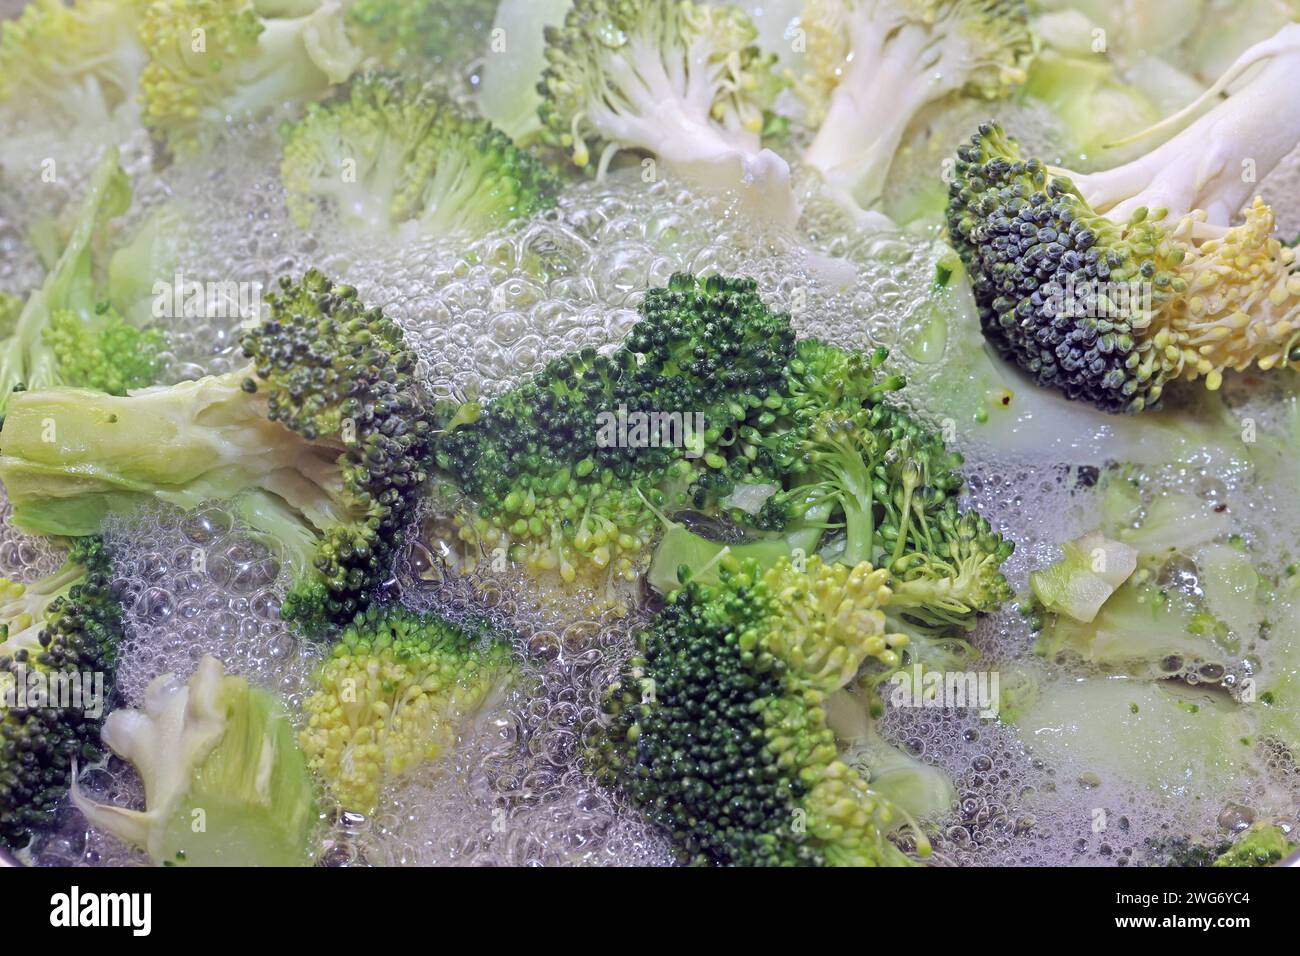 Gemüsepflanzen für die Küche in einem Topf mit kochendem Wasser wird Brokkoli blanchiert *** Gemüsepflanzen für die Küche Brokkoli wird in einem Topf mit kochendem Wasser blanchiert Stockfoto